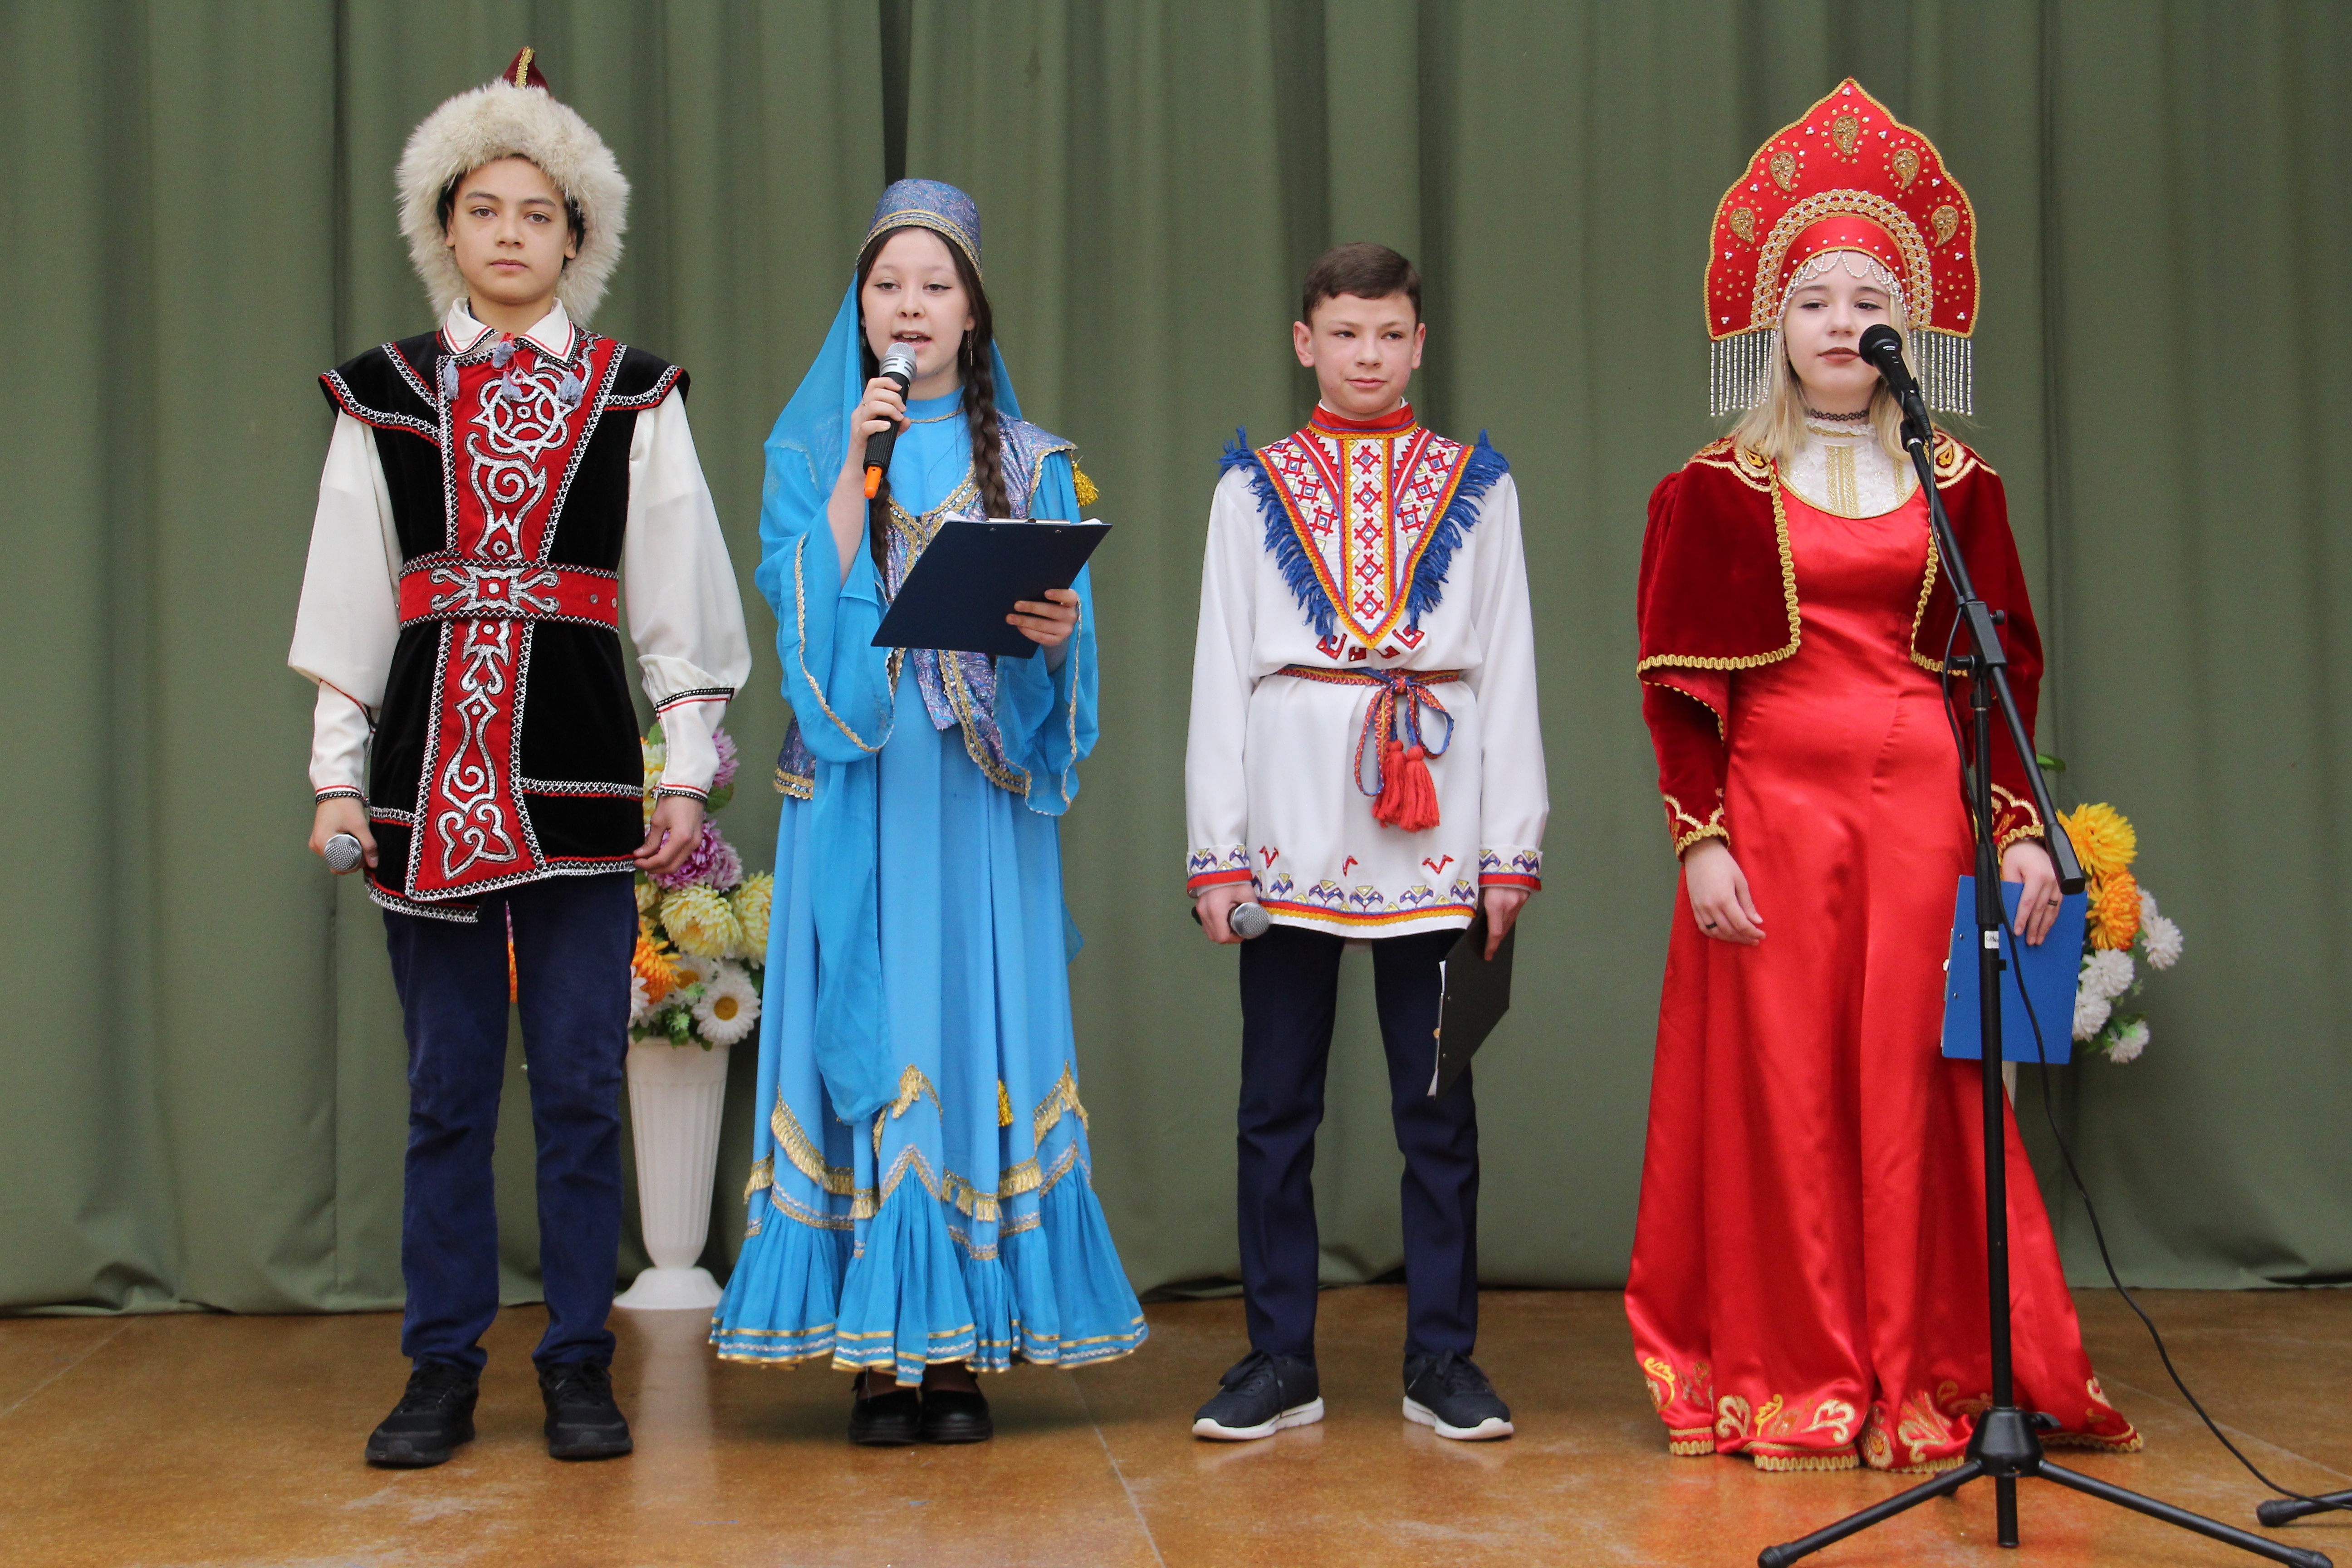 Сегодня в средней школе №2 с.Стерлибашево состоялся конкурс чтецов «Живое звучащее слово» - отборочный этап республиканского конкурса